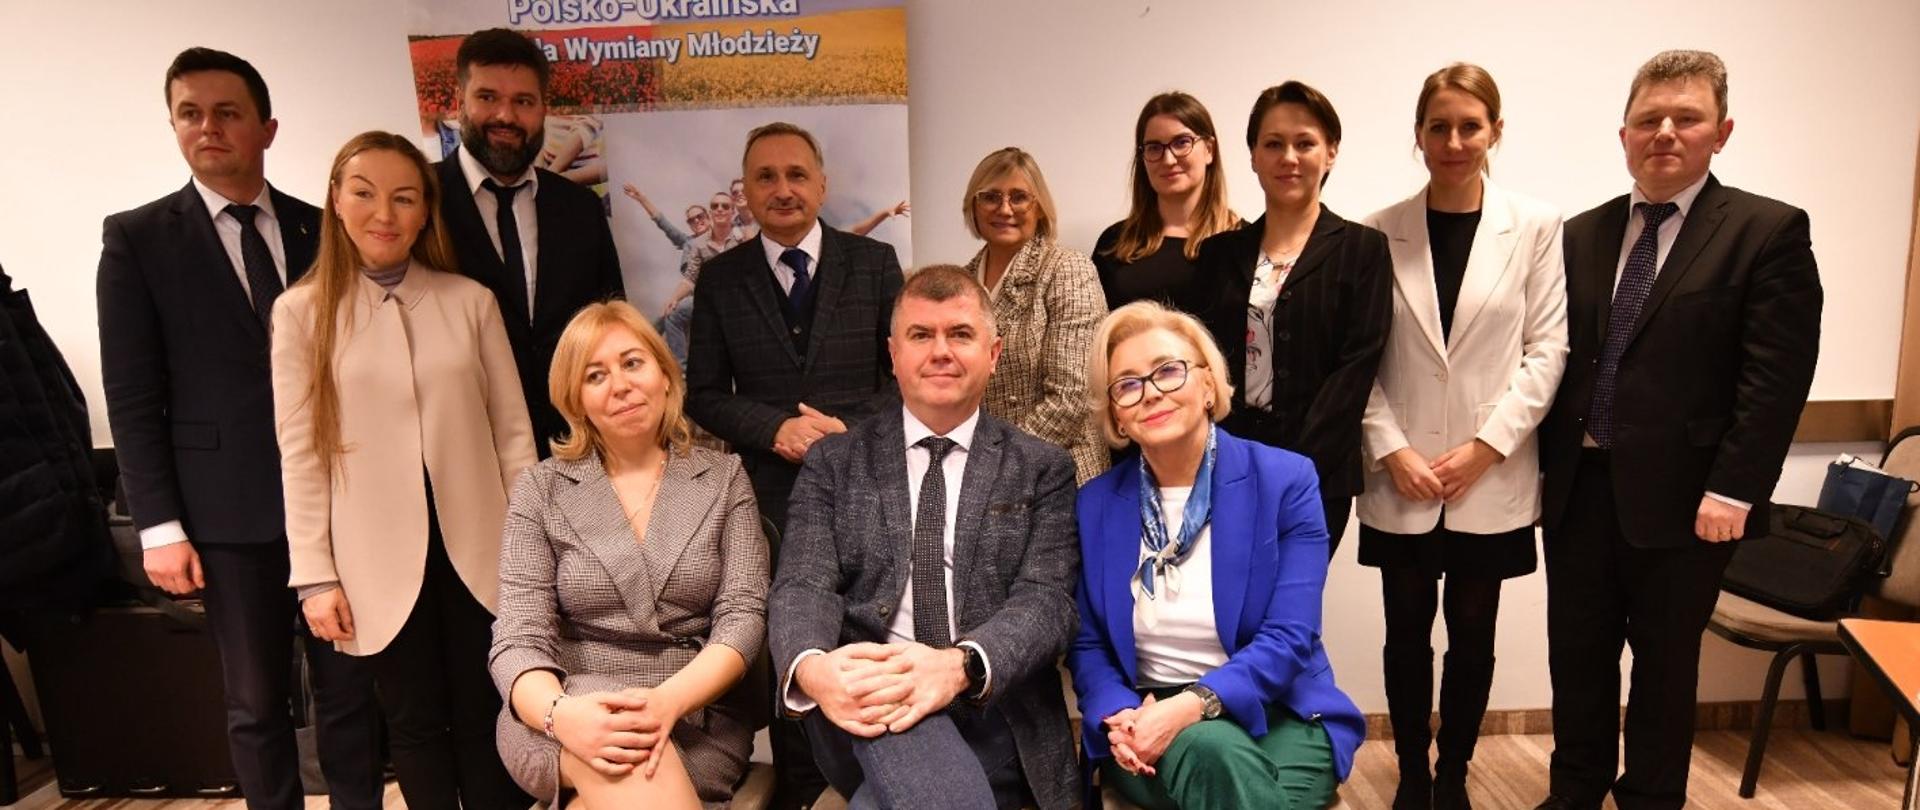 Wiceminister Marzena Machałek uczestniczyła w Posiedzeniu Polsko-Ukraińskiej Rady Wymiany Młodzieży 